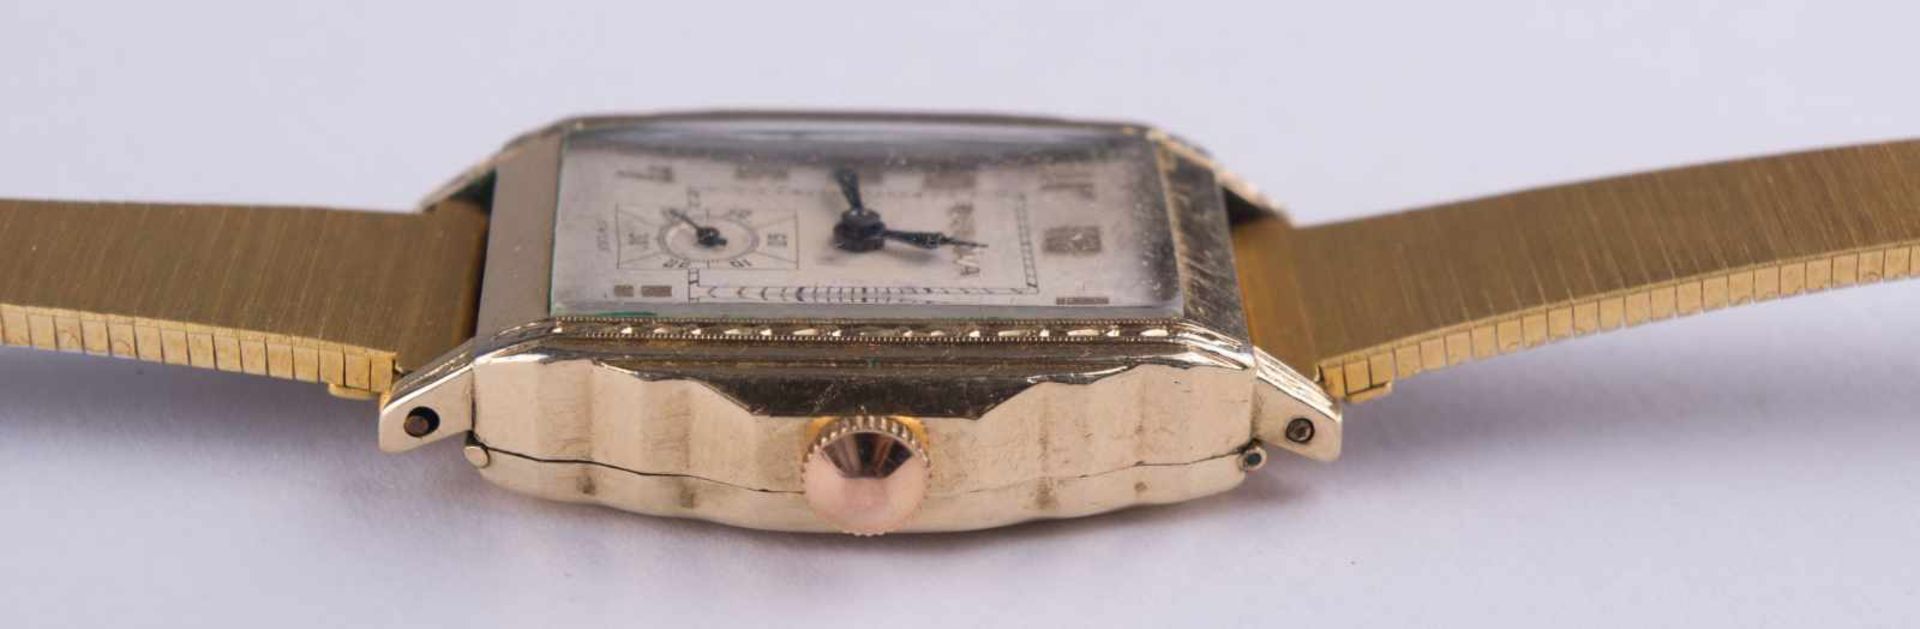 Herren Uhr Bulova um 1935 / Men´s watch, Bulova about 1935 im Scharniergehäuse Goldfild, rundes - Image 3 of 6